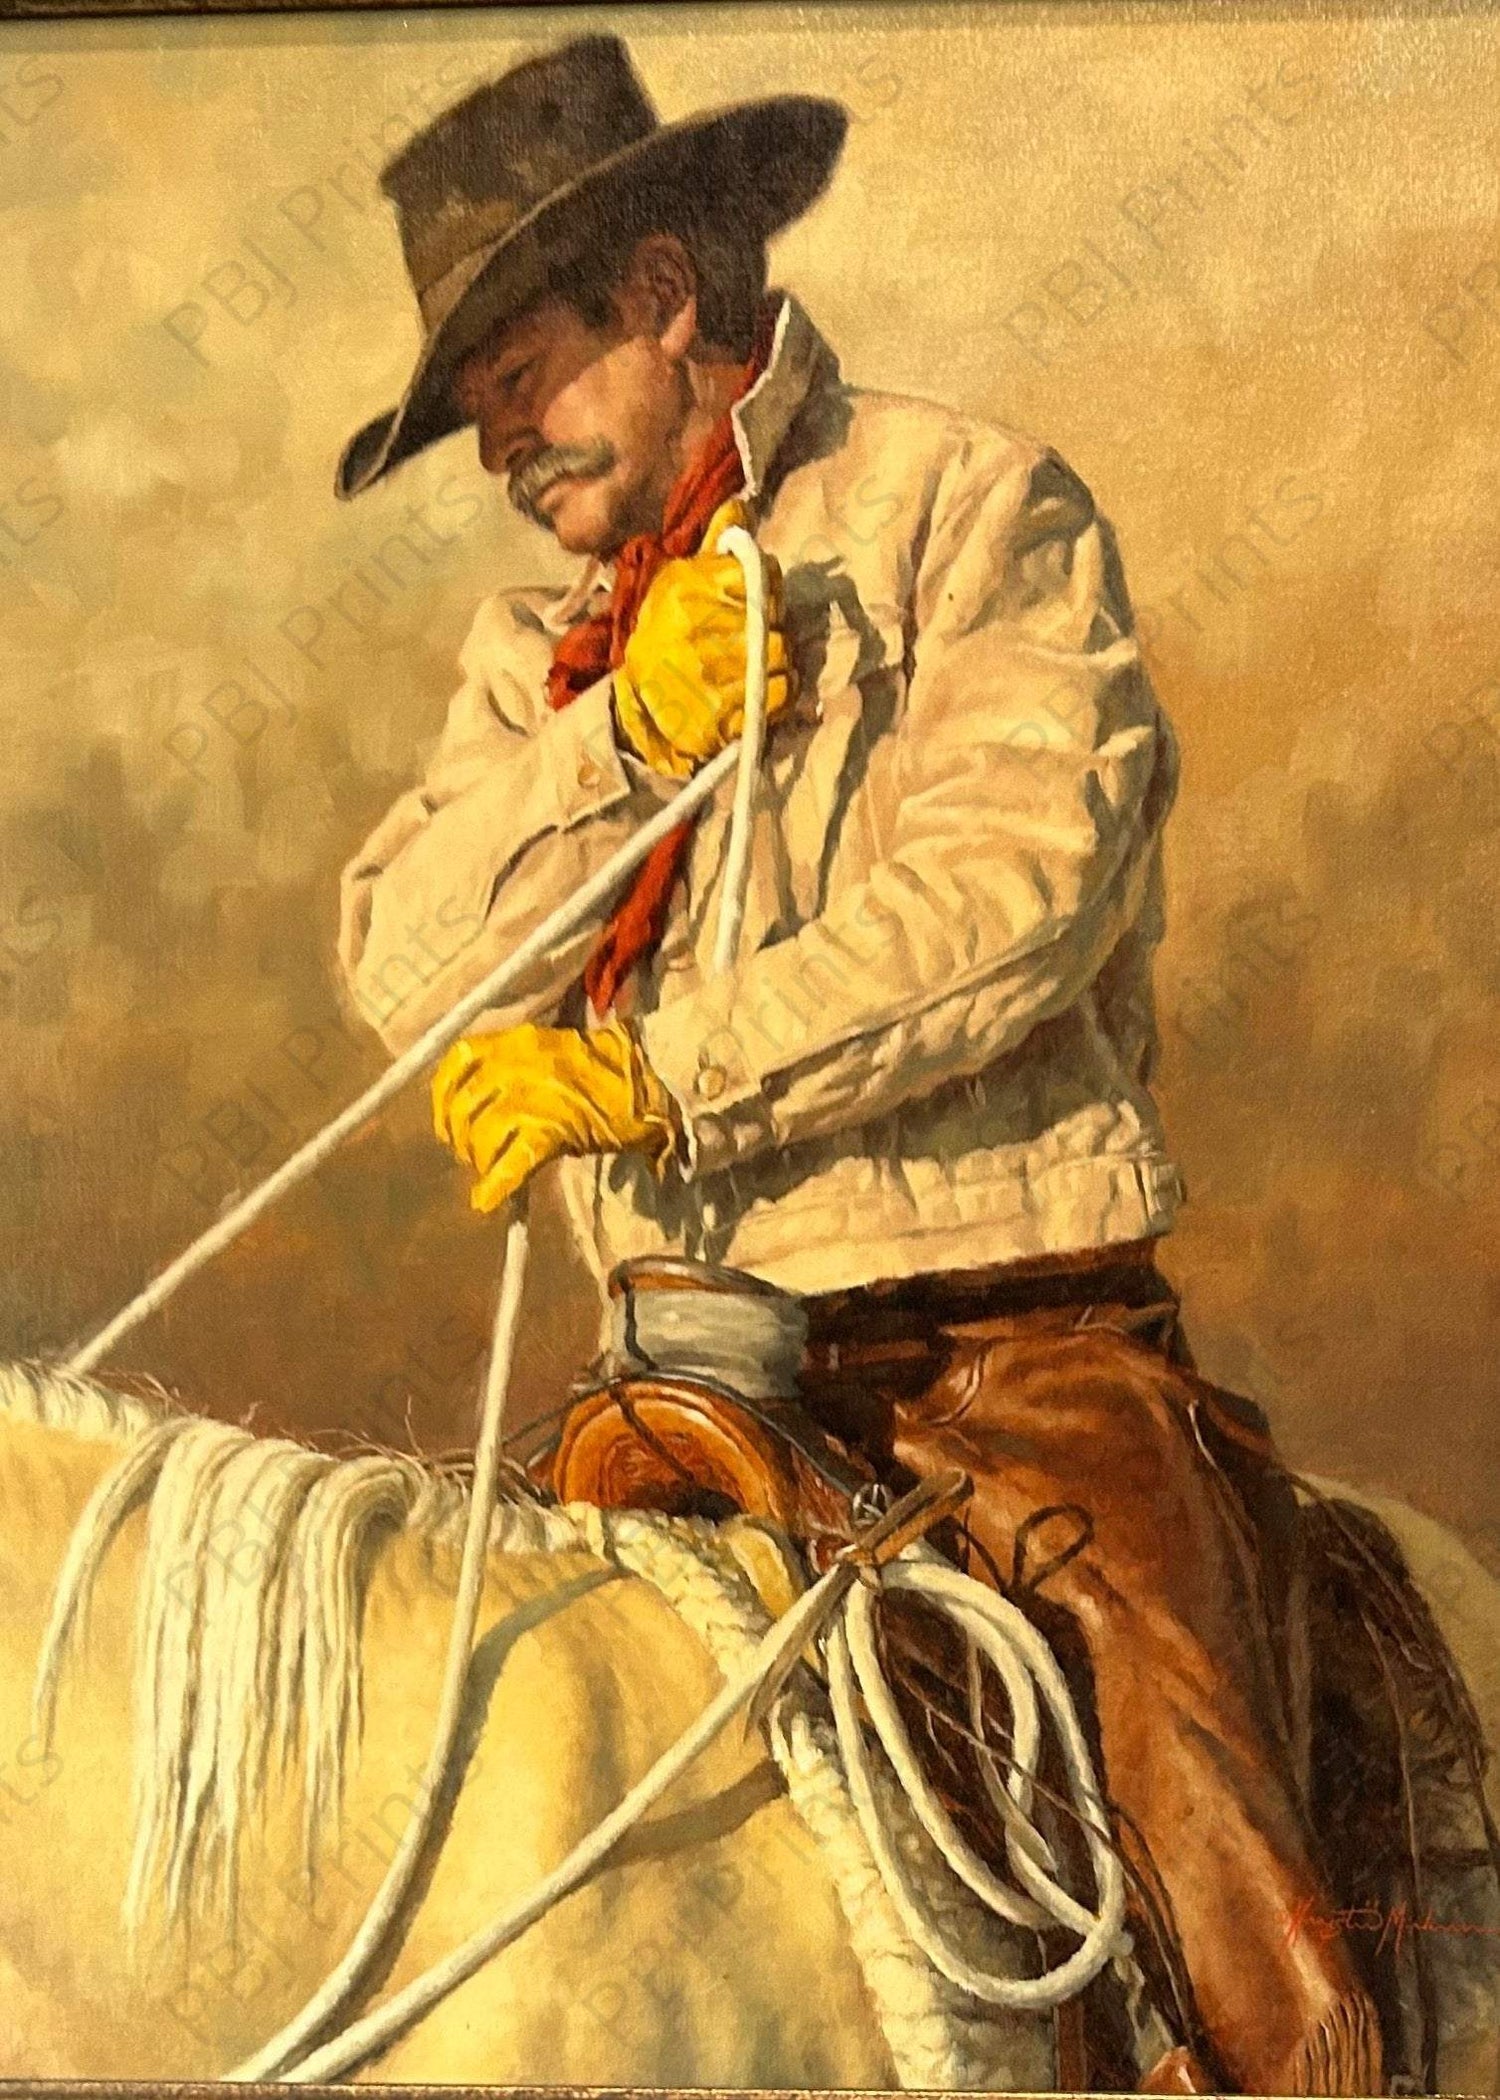 Cowboy - Artist by Davina Dell Design - Art Prints, Decoupage Rice Paper, Flat Canvas Prints, Giclee Prints, Photo Prints, Poster Prints